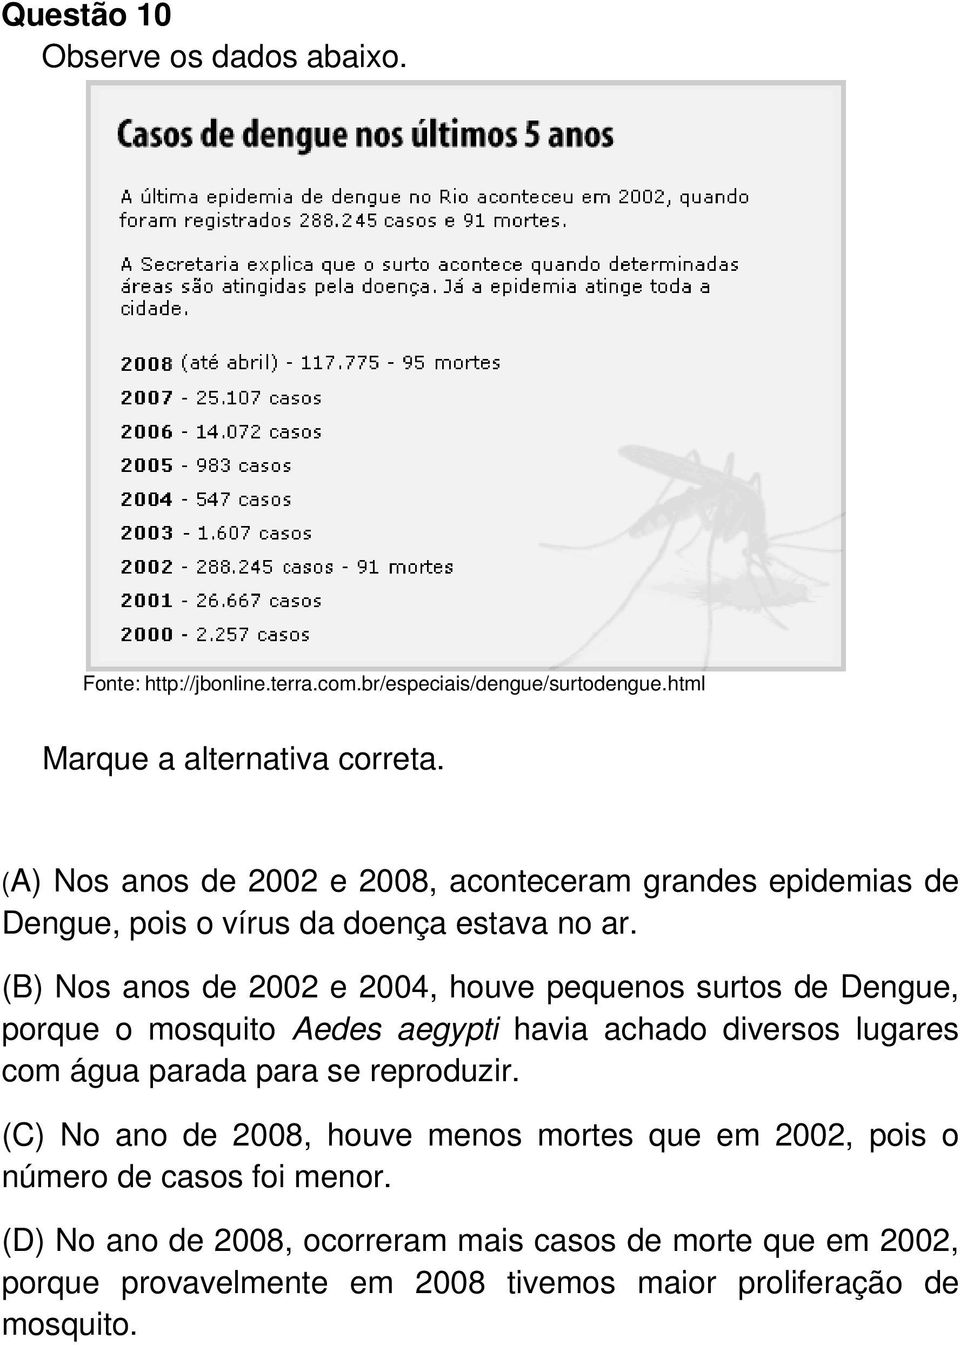 (B) Nos anos de 2002 e 2004, houve pequenos surtos de Dengue, porque o mosquito Aedes aegypti havia achado diversos lugares com água parada para se